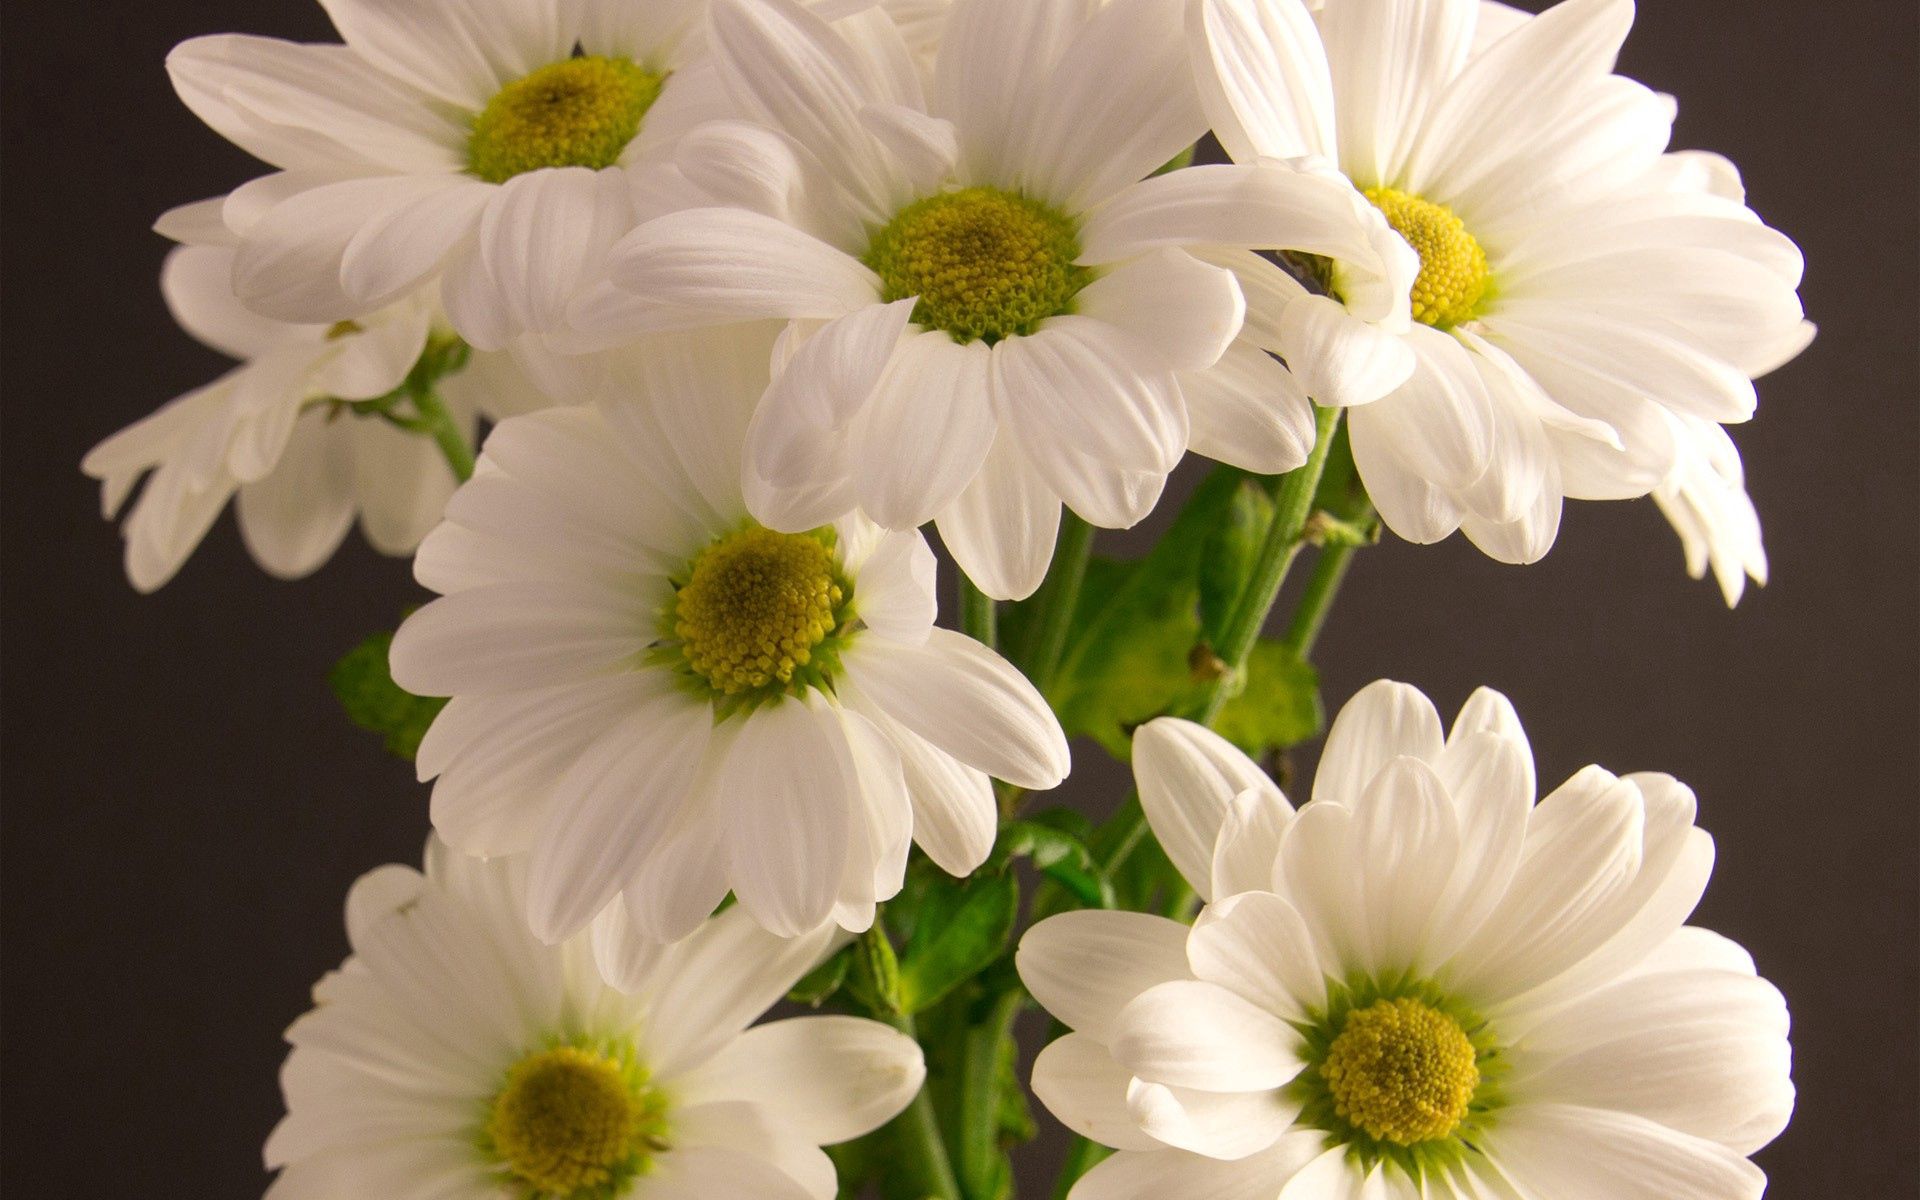 155407 免費下載 白色 手機壁紙，花卉, 花束, 白色的, 花瓣 白色 圖像和手機屏保